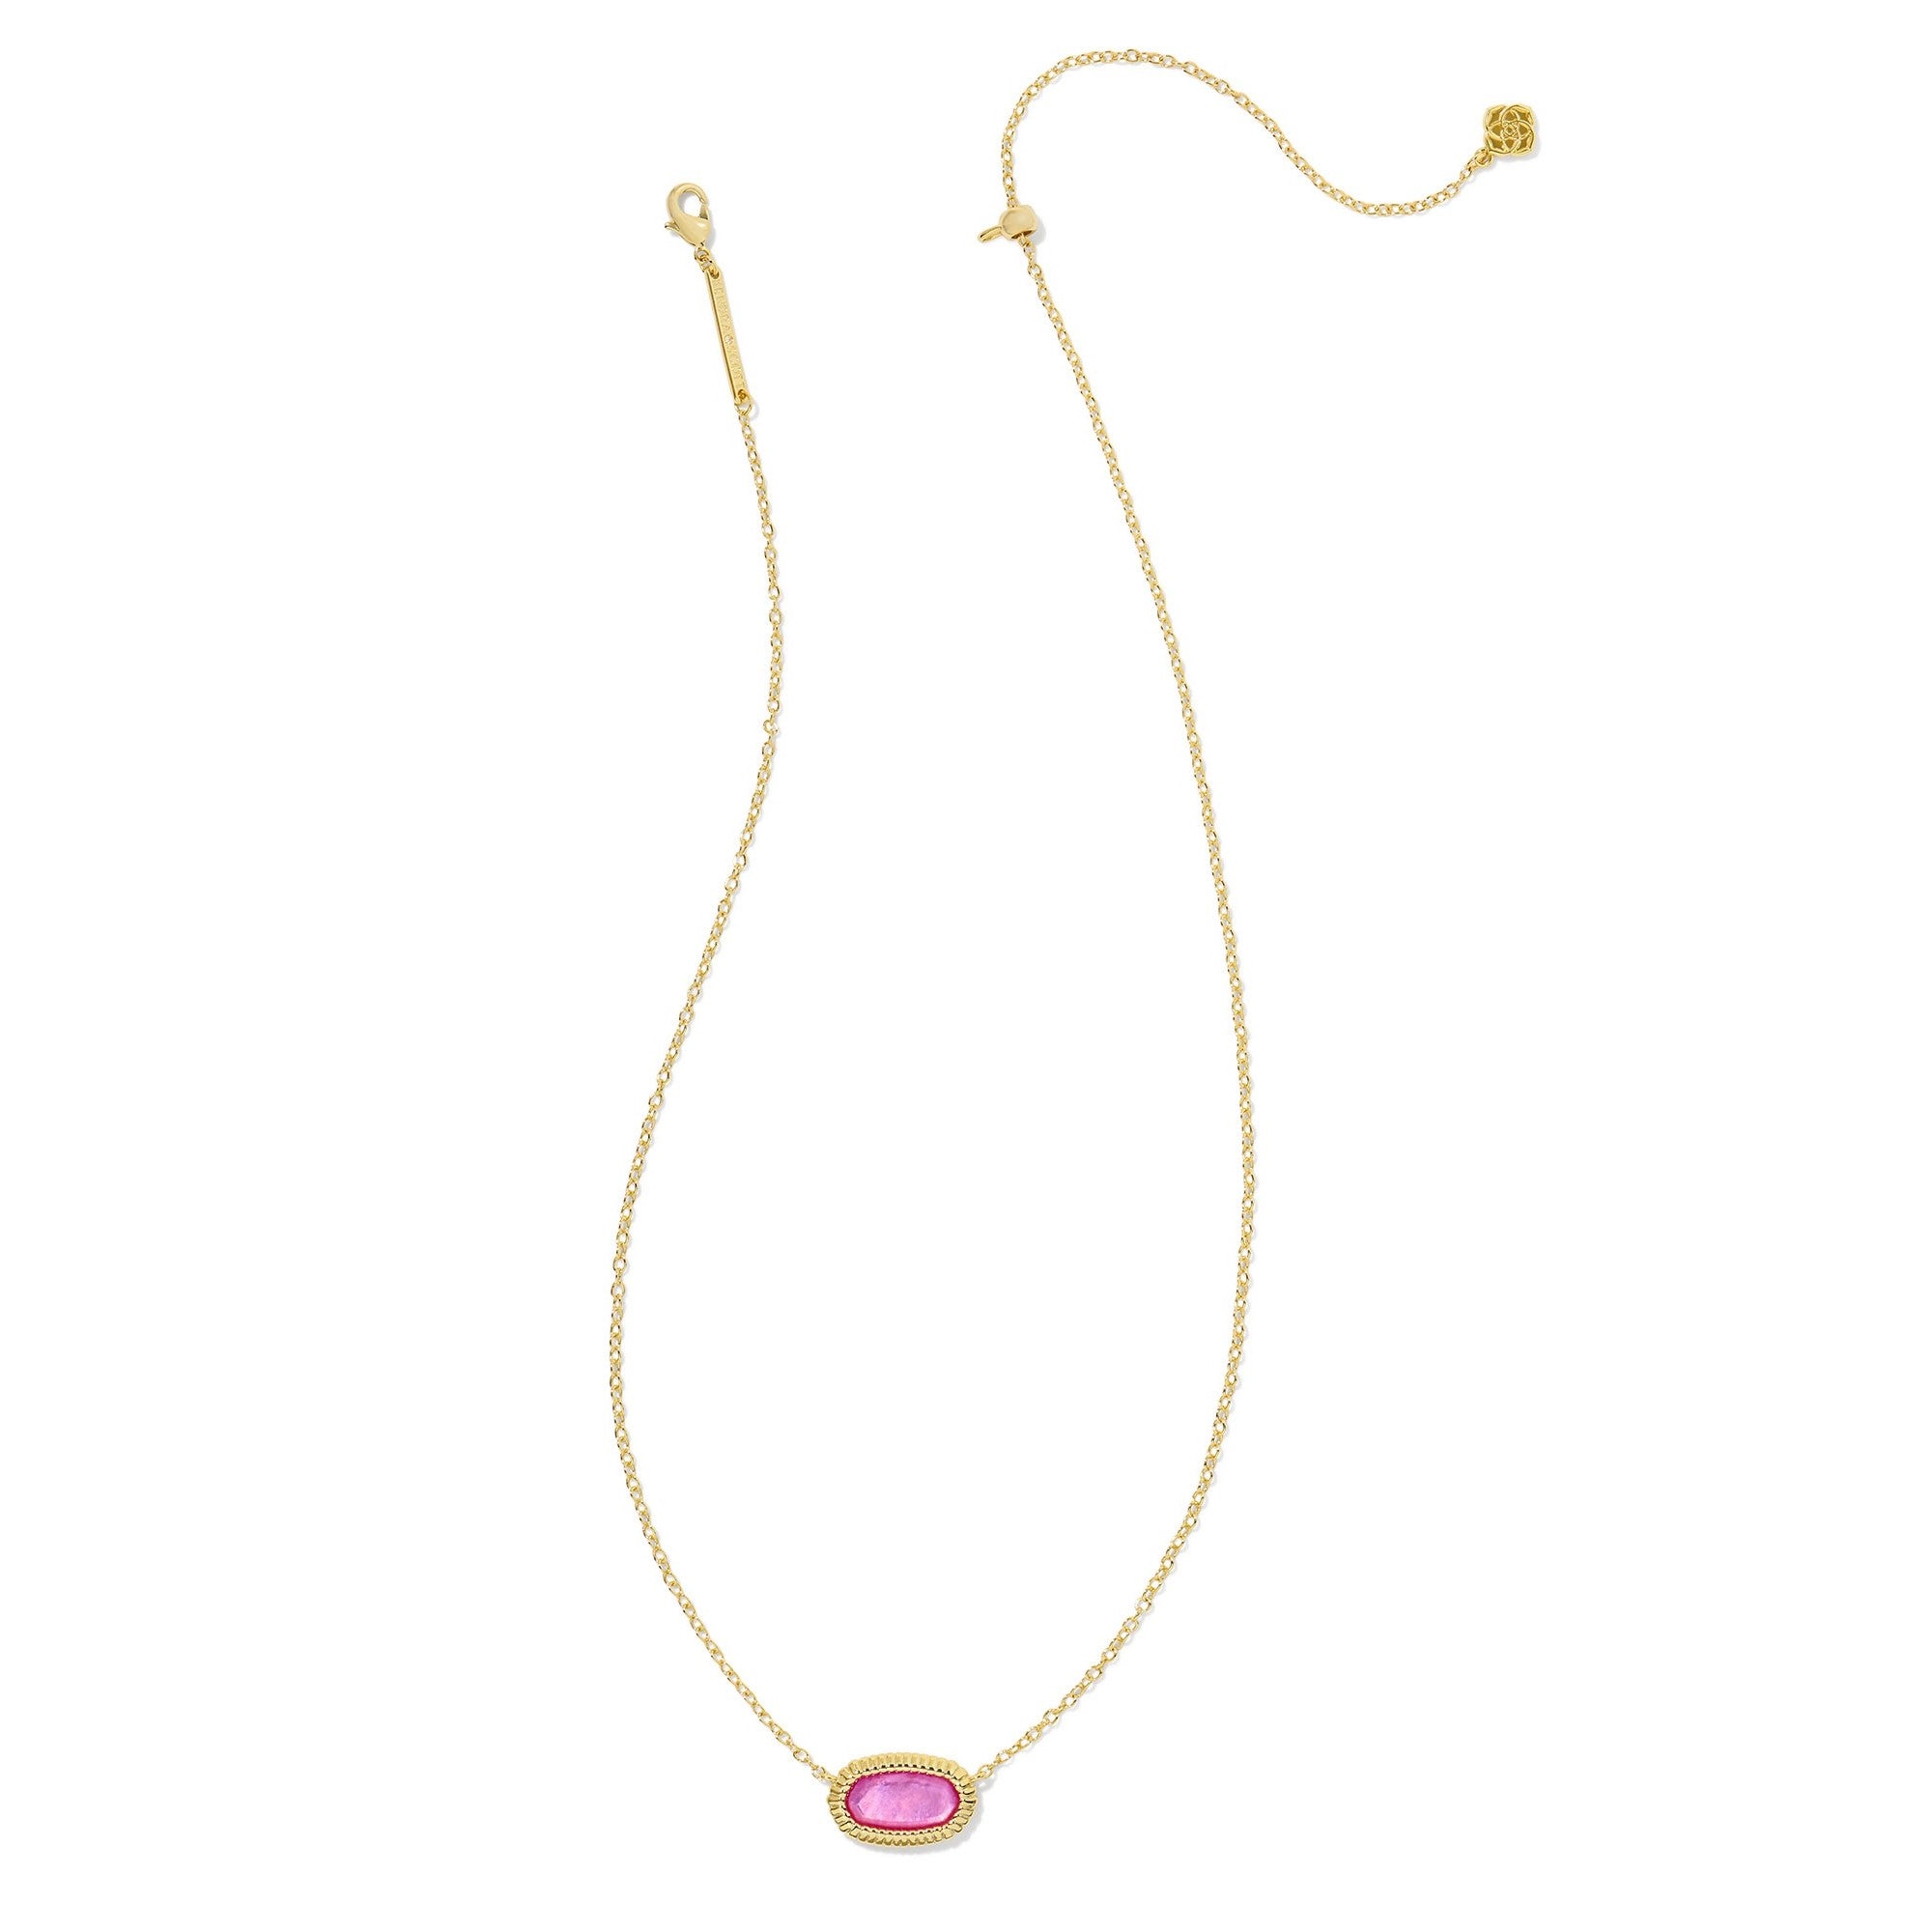 Kendra Scott | Elisa Gold Ridge Frame Short Pendant Necklace in Azalea Illusion - Giddy Up Glamour Boutique